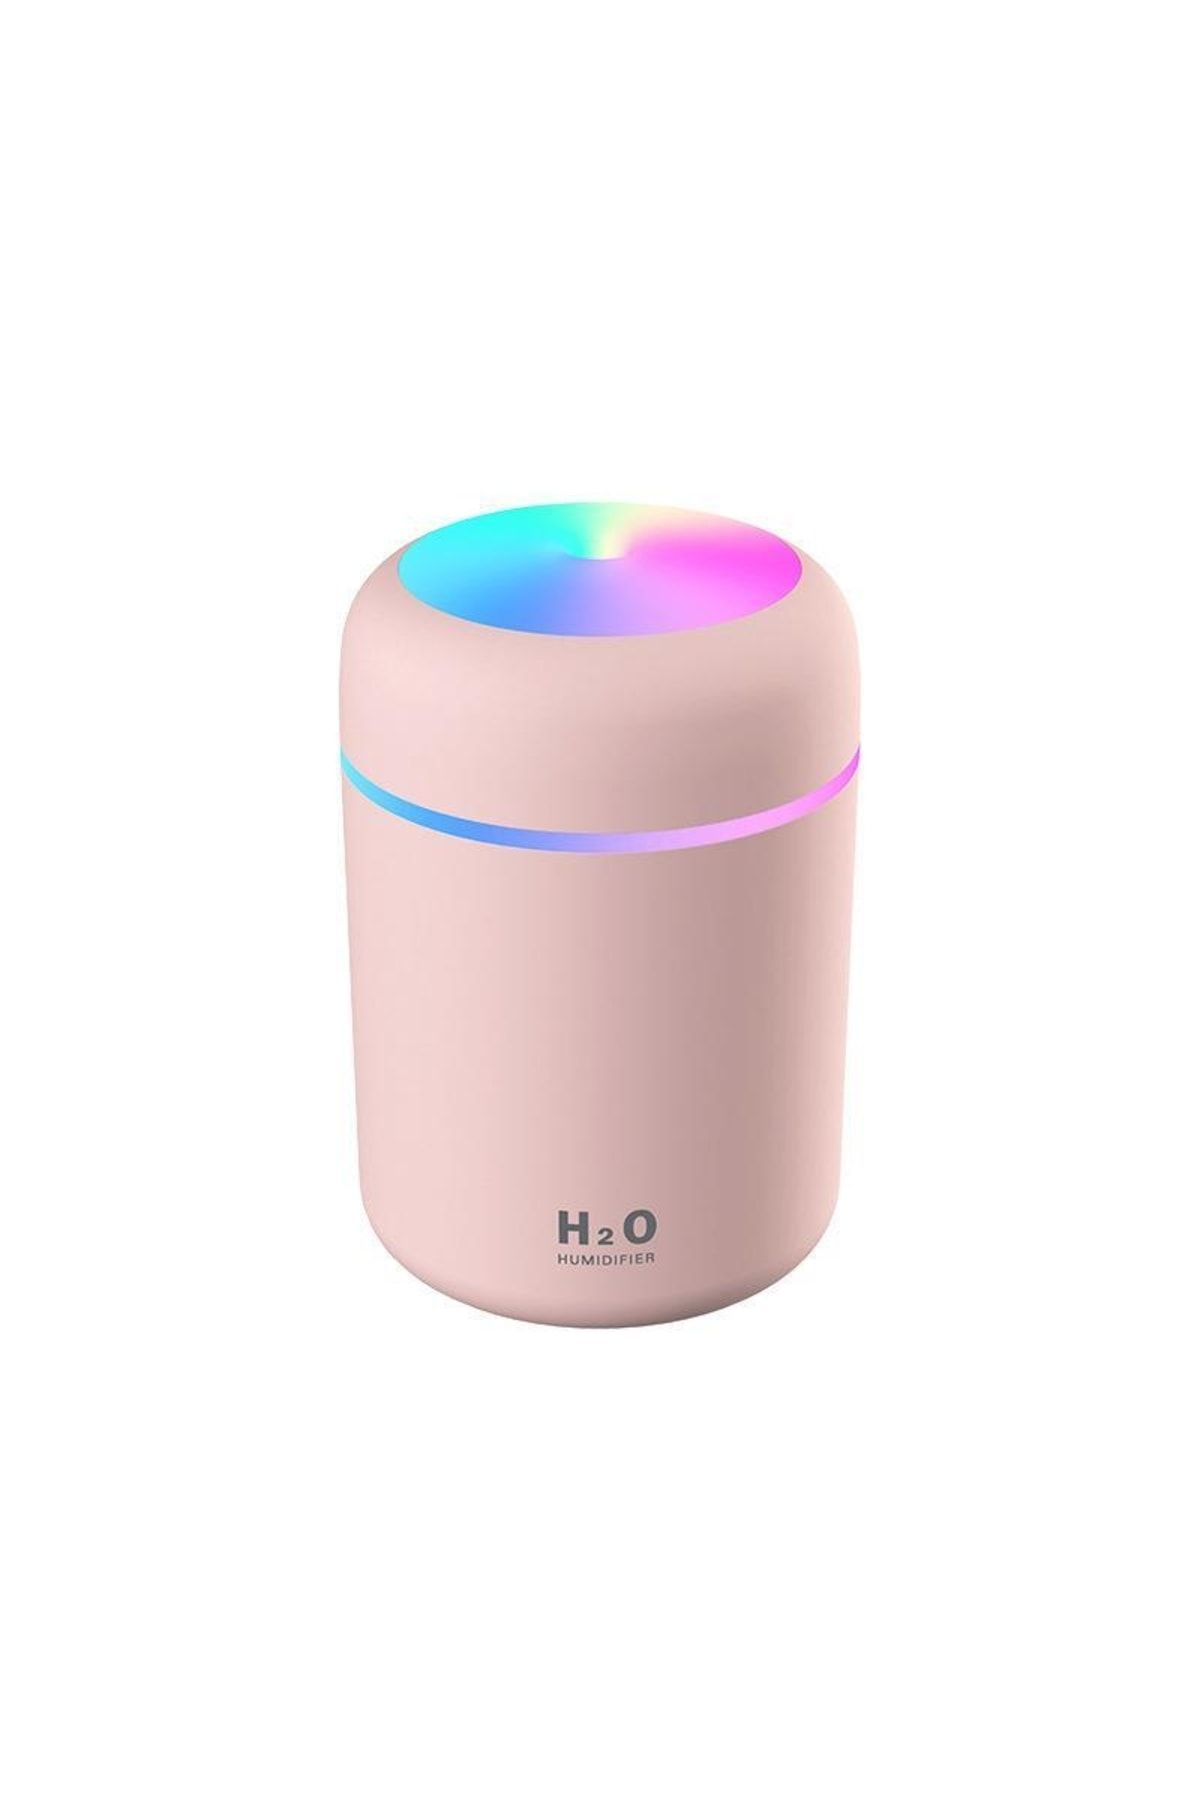 H2O Humidifier Hzl Işıklı Dekoratif Hava Nemlendirici